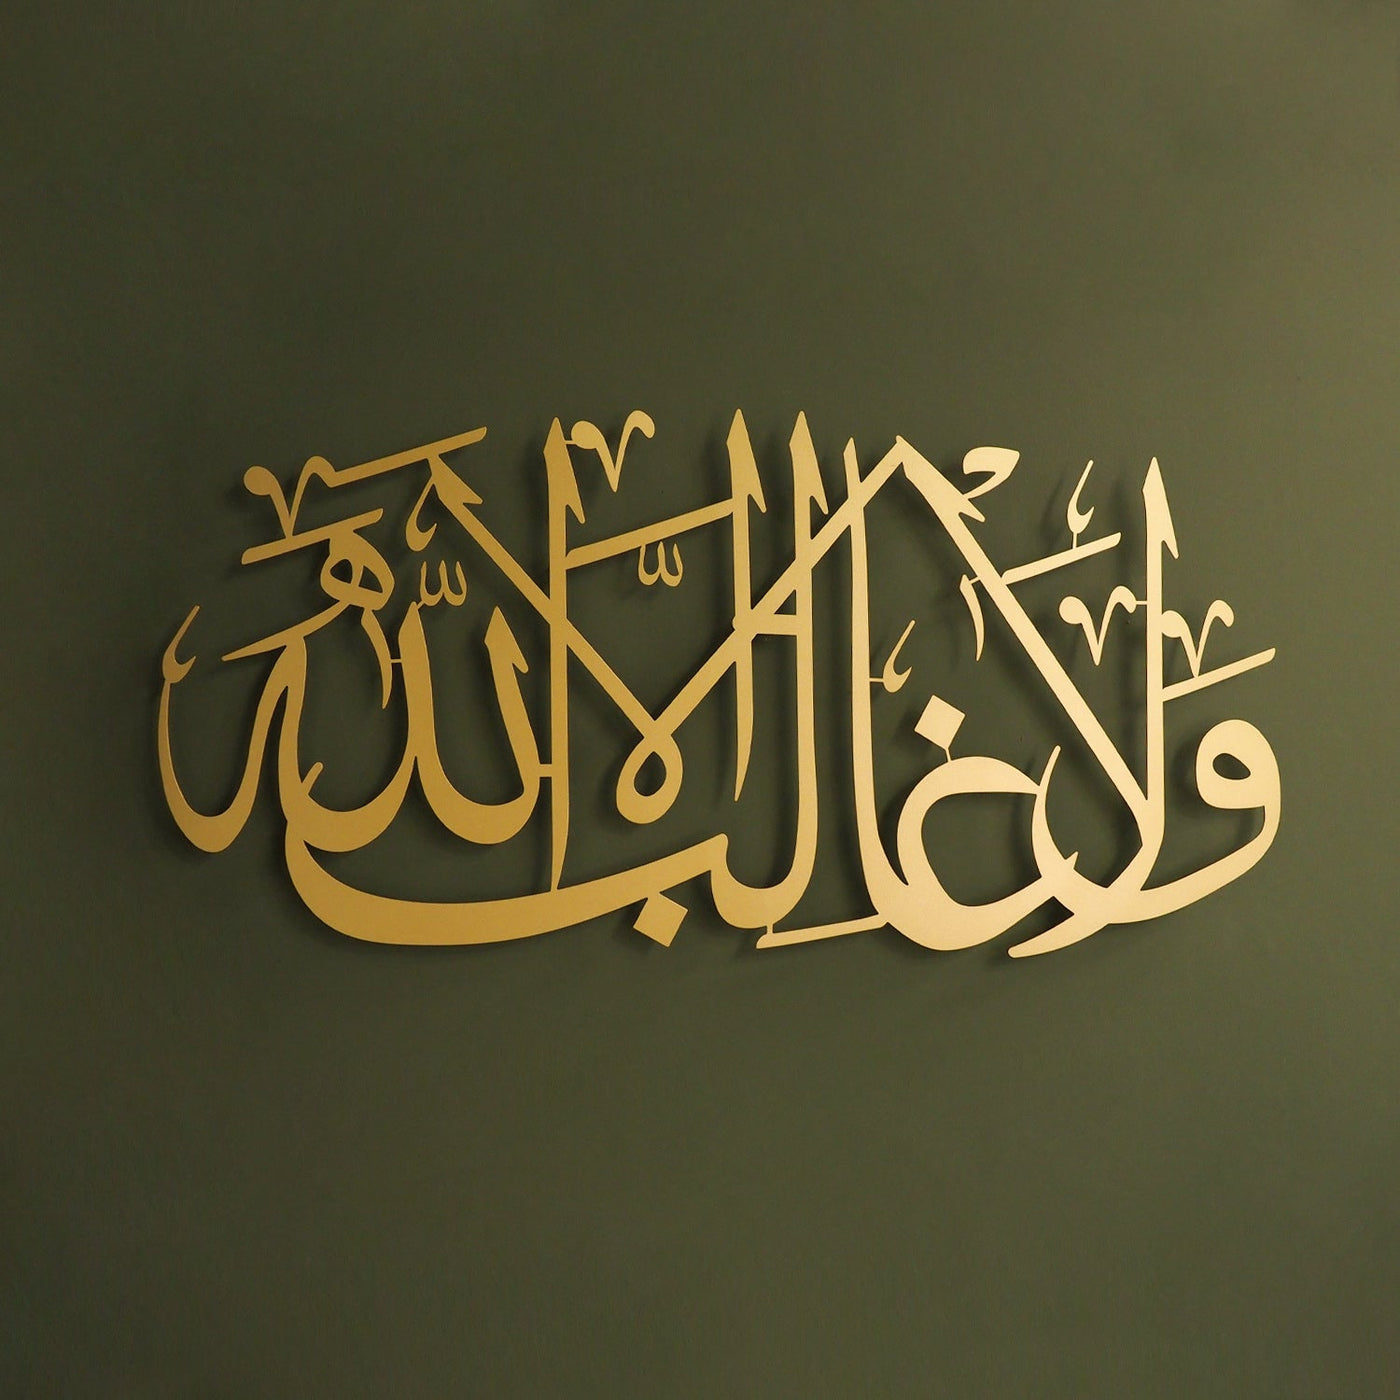 La Galibe İllallah Yazılı İslami Metal Duvar Tablosu - WAM216